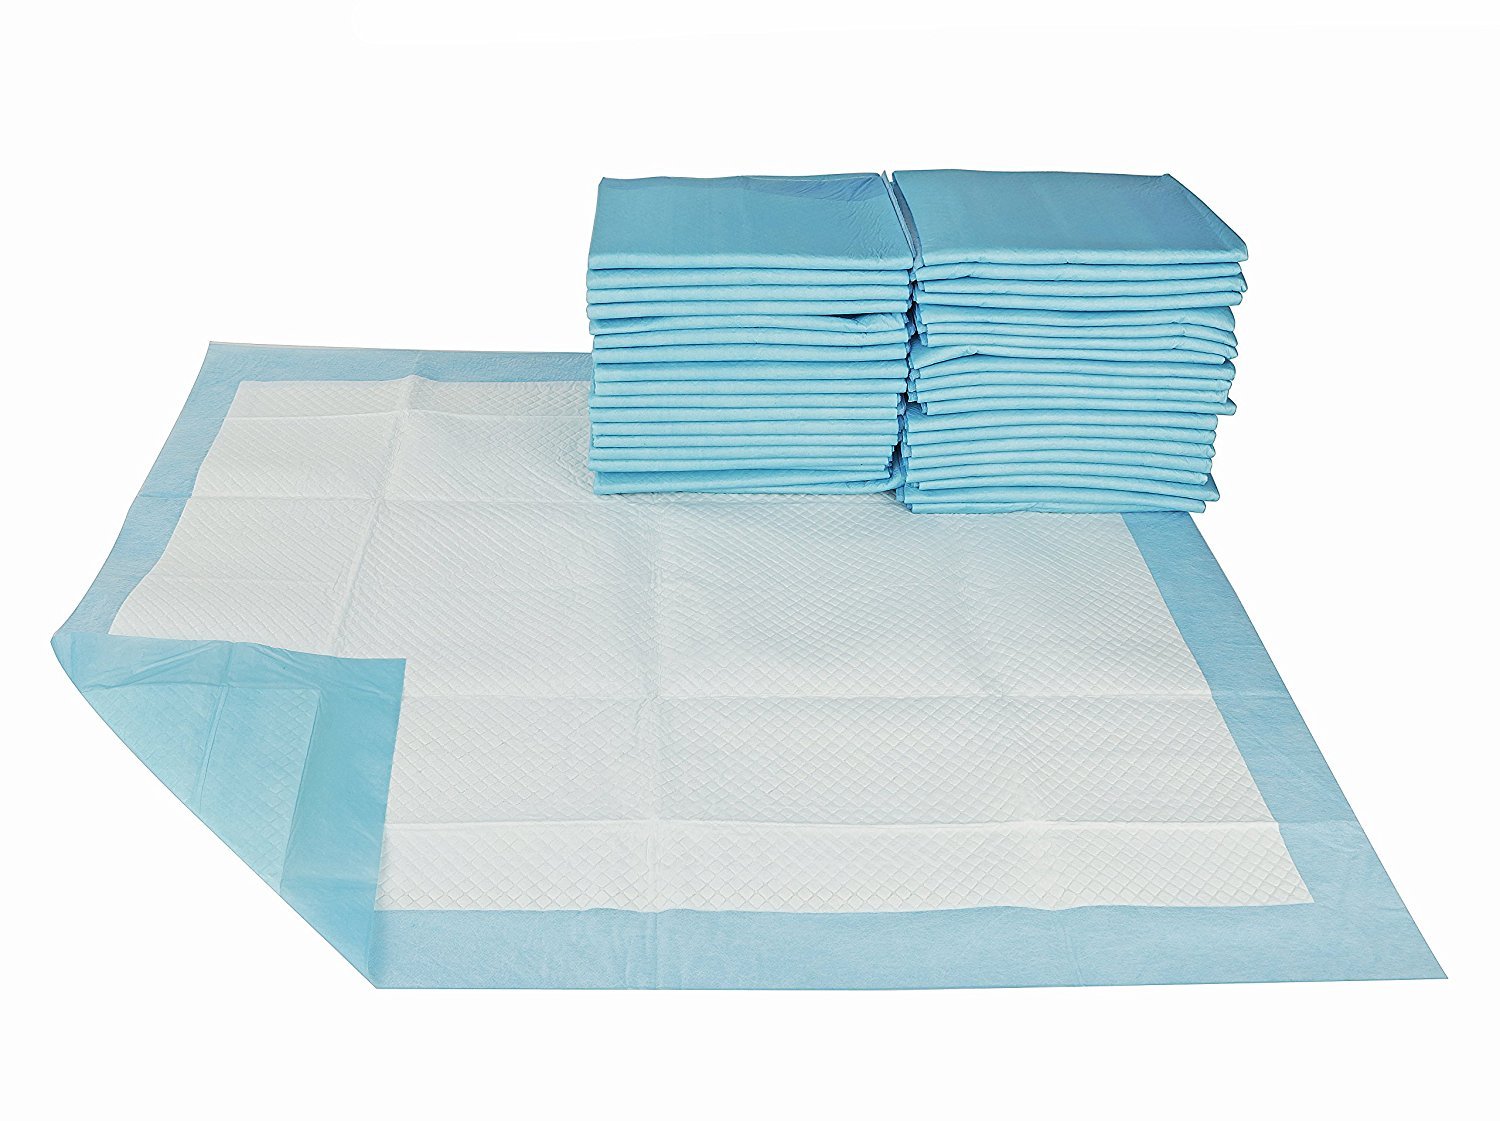 Underpad adulto de alta qualidade com super absorção de incontinência fornece cuidados de enfermagem almofada de cama amostra grátis